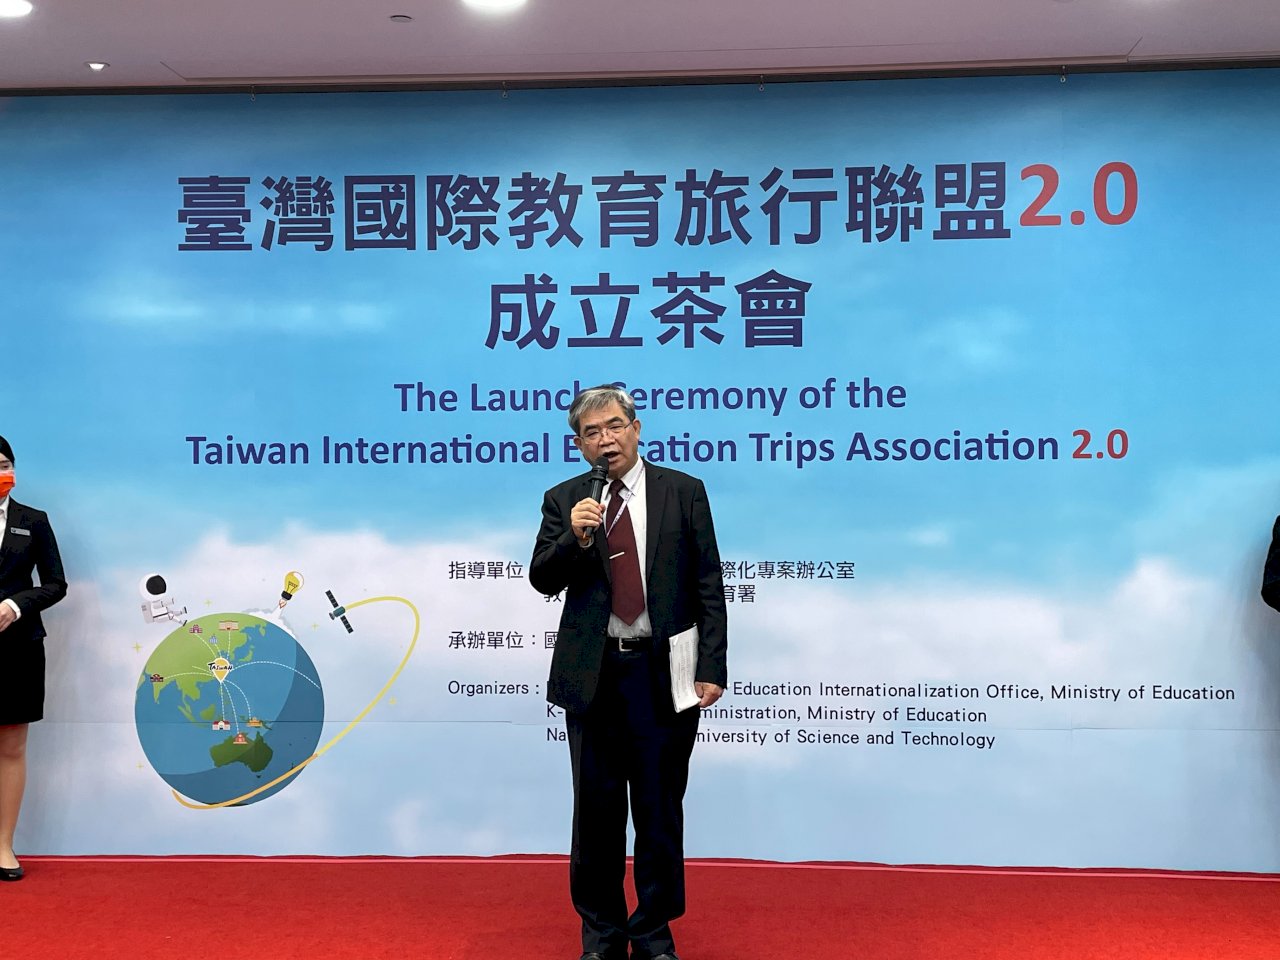 台灣國際教育旅行聯盟2.0成立 從日韓交流擴及新南向國家